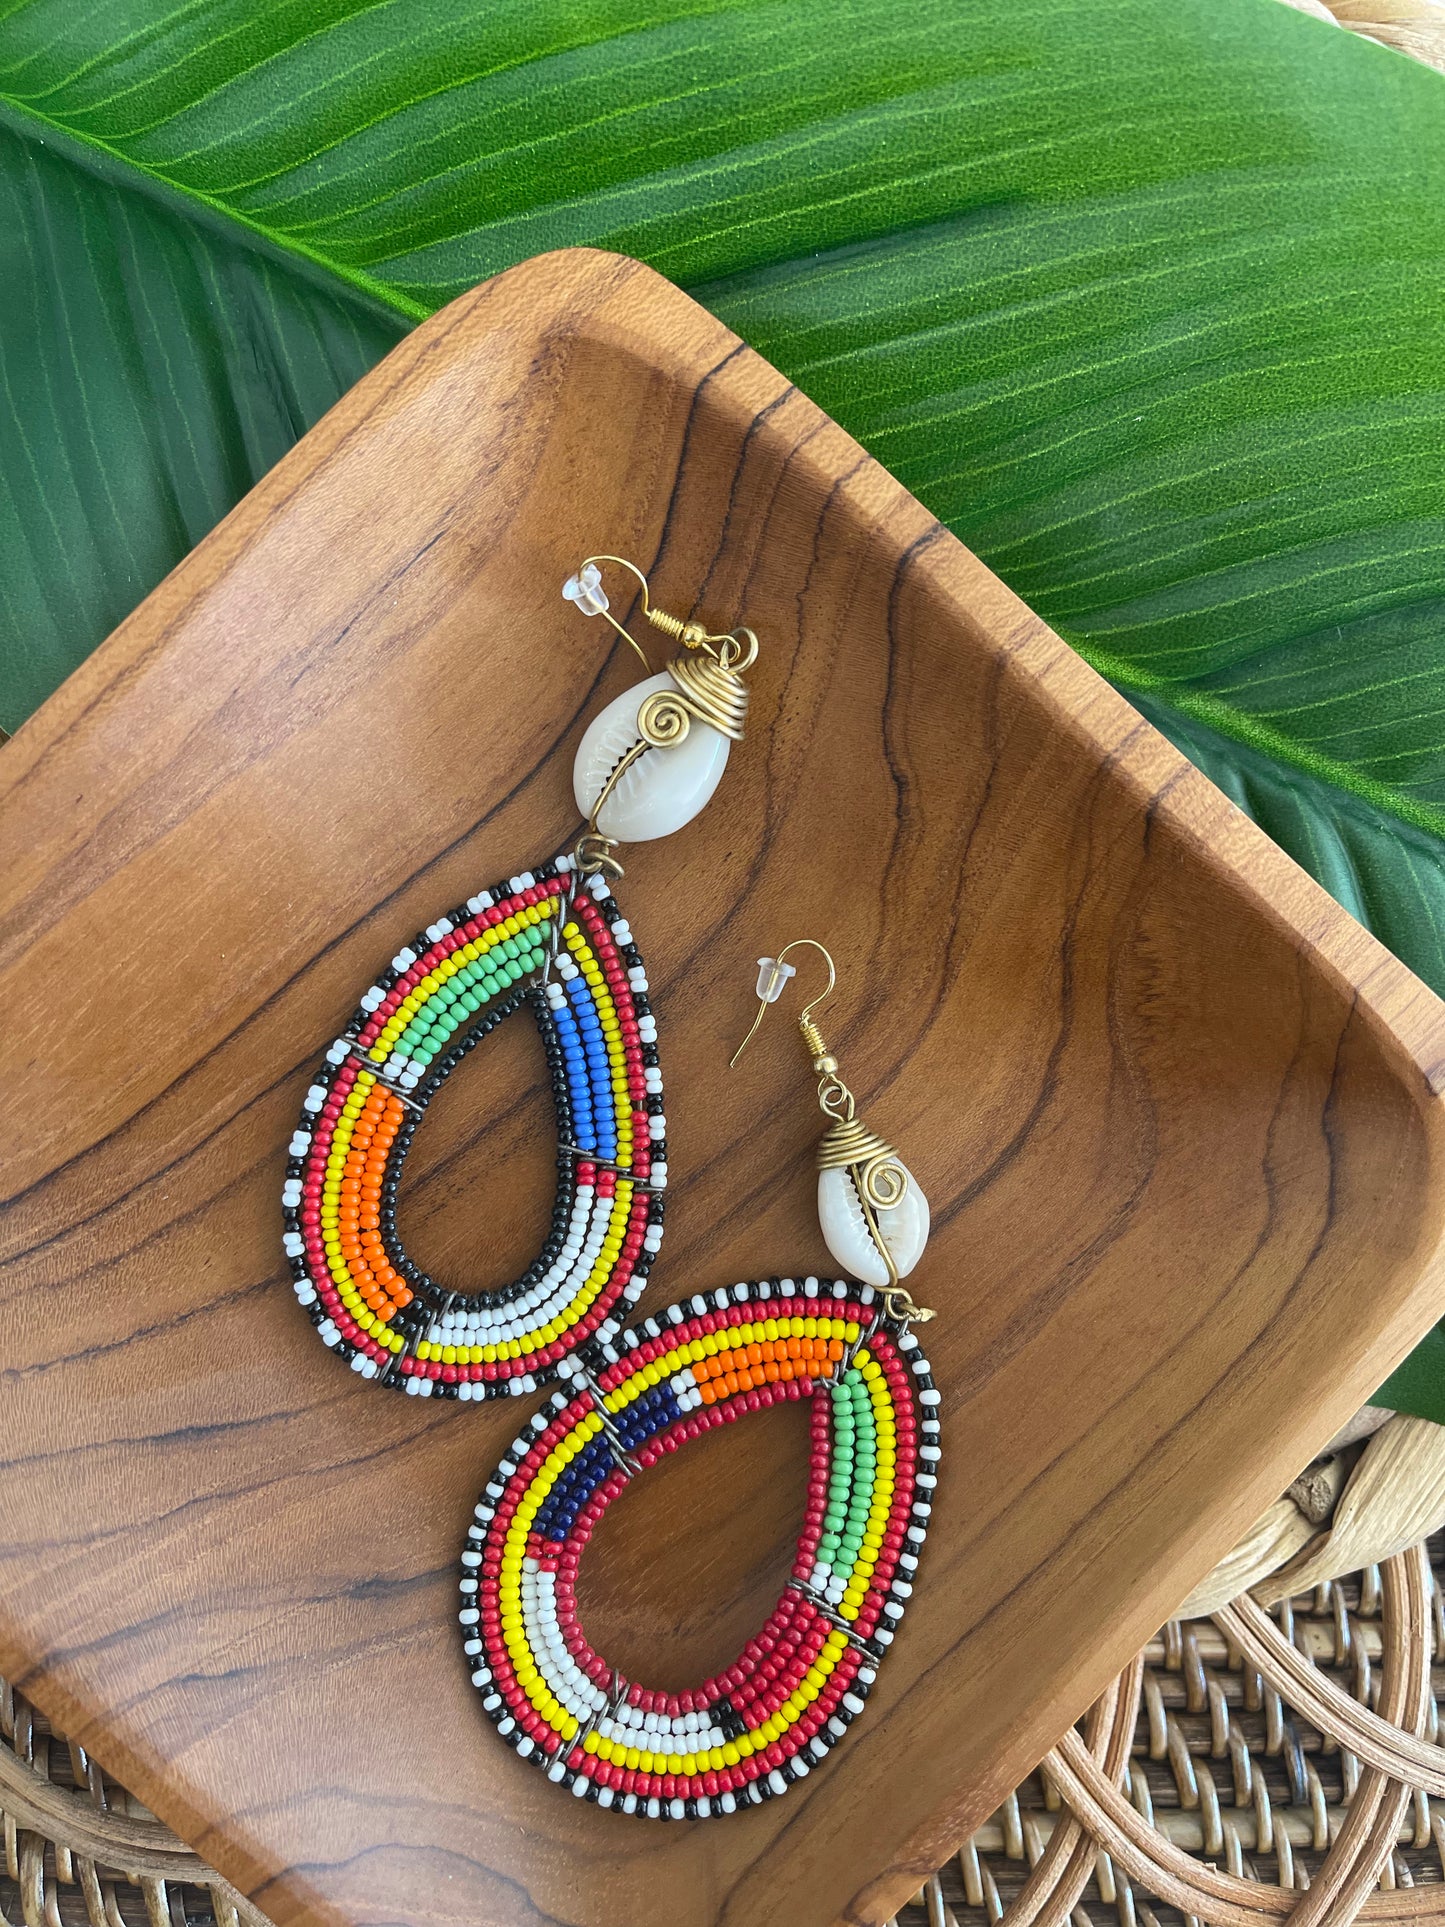 Kenya Earrings